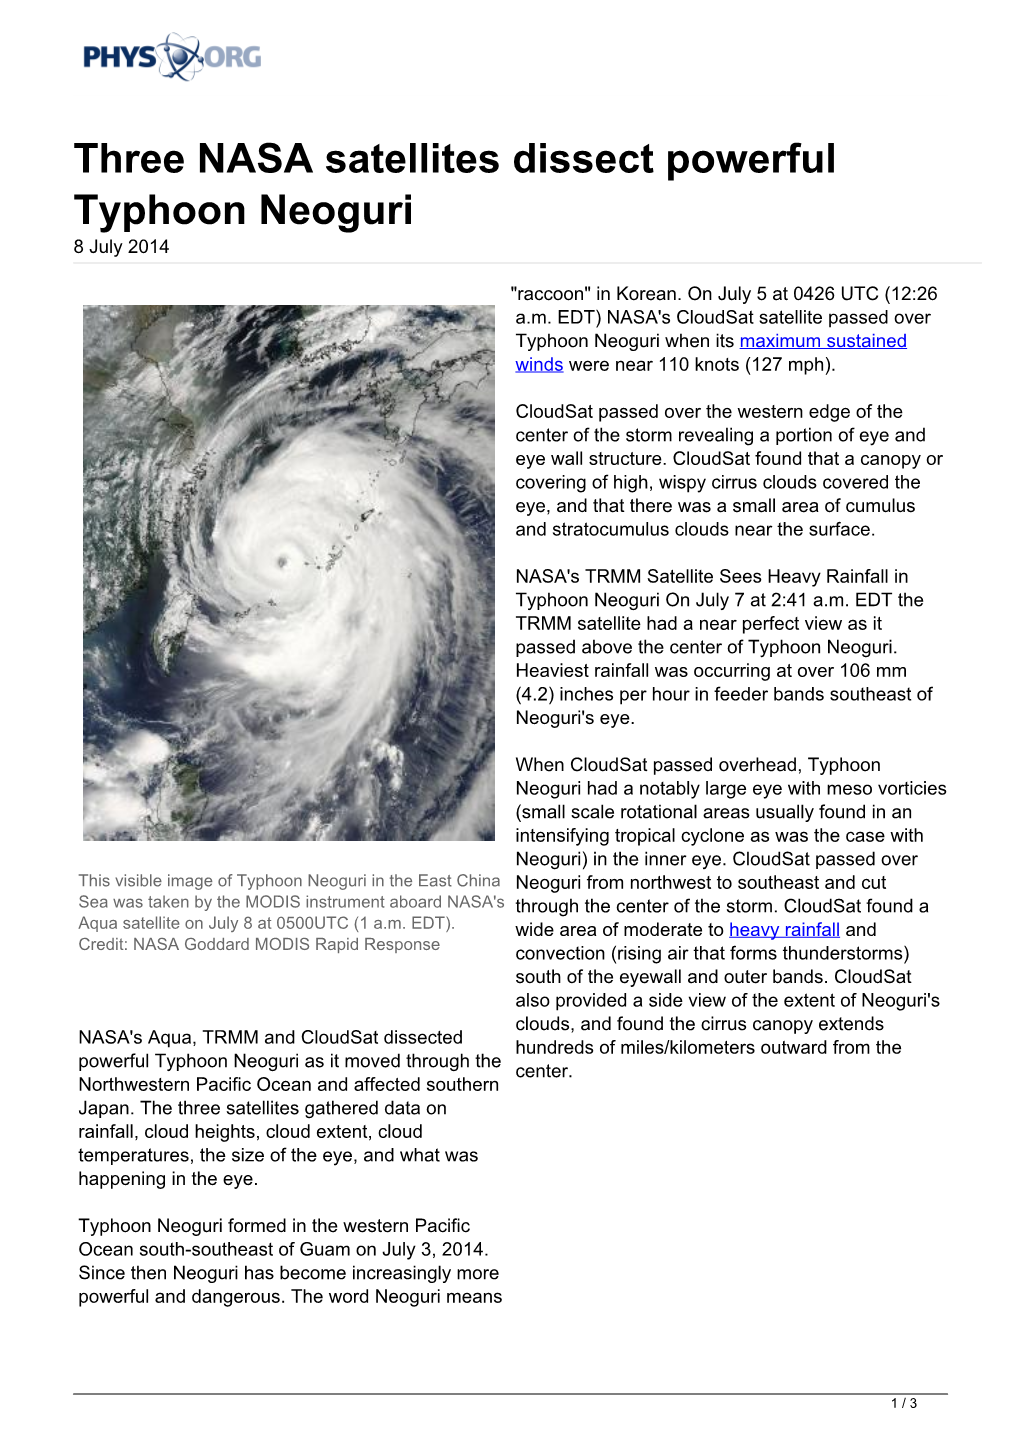 Three NASA Satellites Dissect Powerful Typhoon Neoguri 8 July 2014